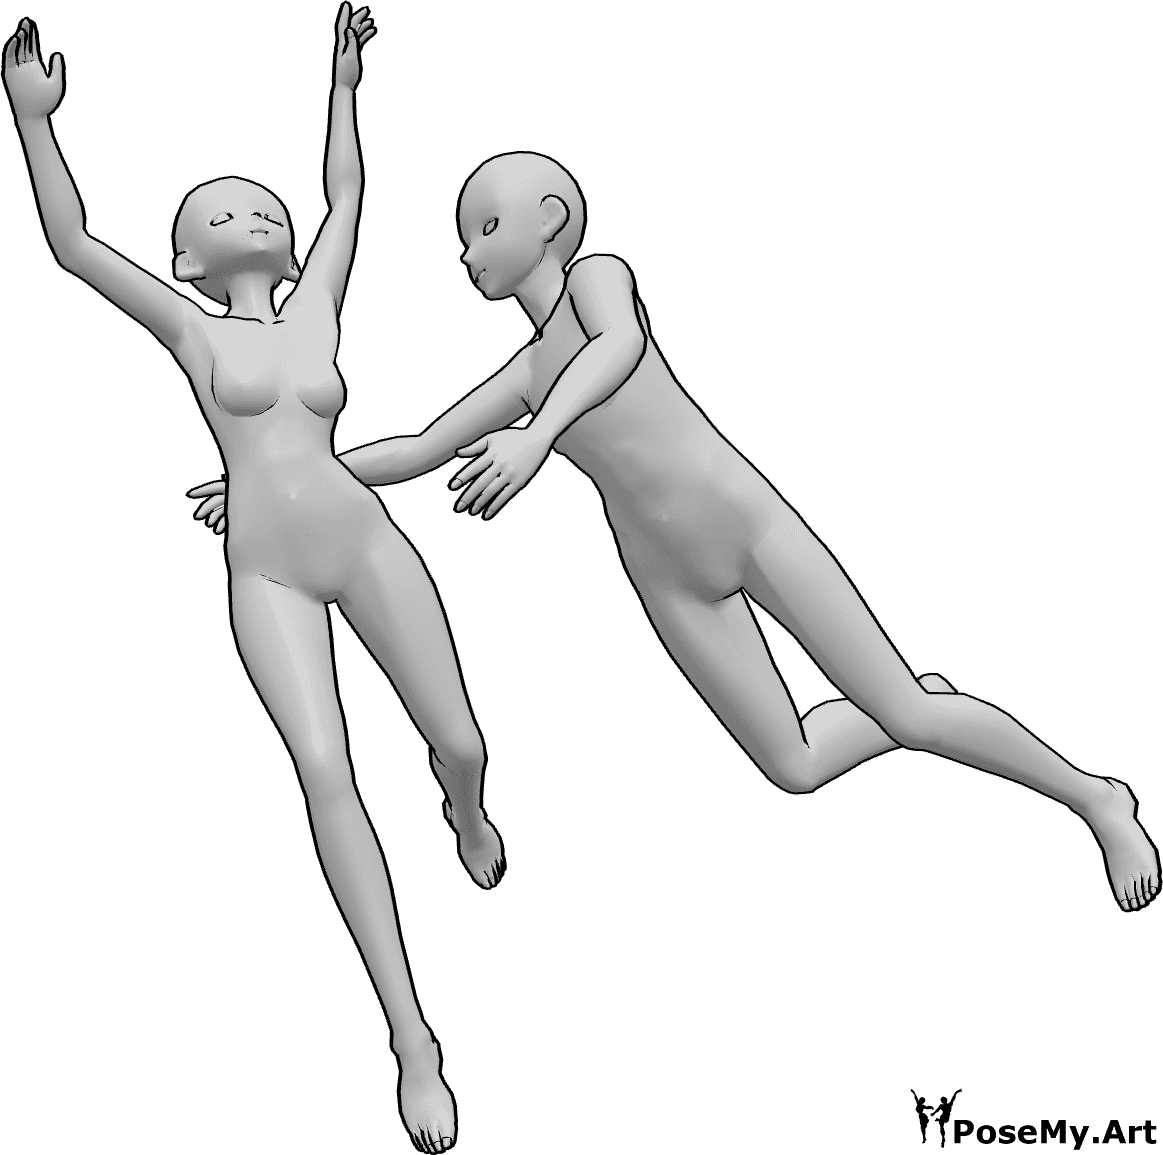 Référence des poses- Femme homme pose de chute - Une femelle et un mâle tombent ensemble, le mâle essaie d'atteindre la femelle.